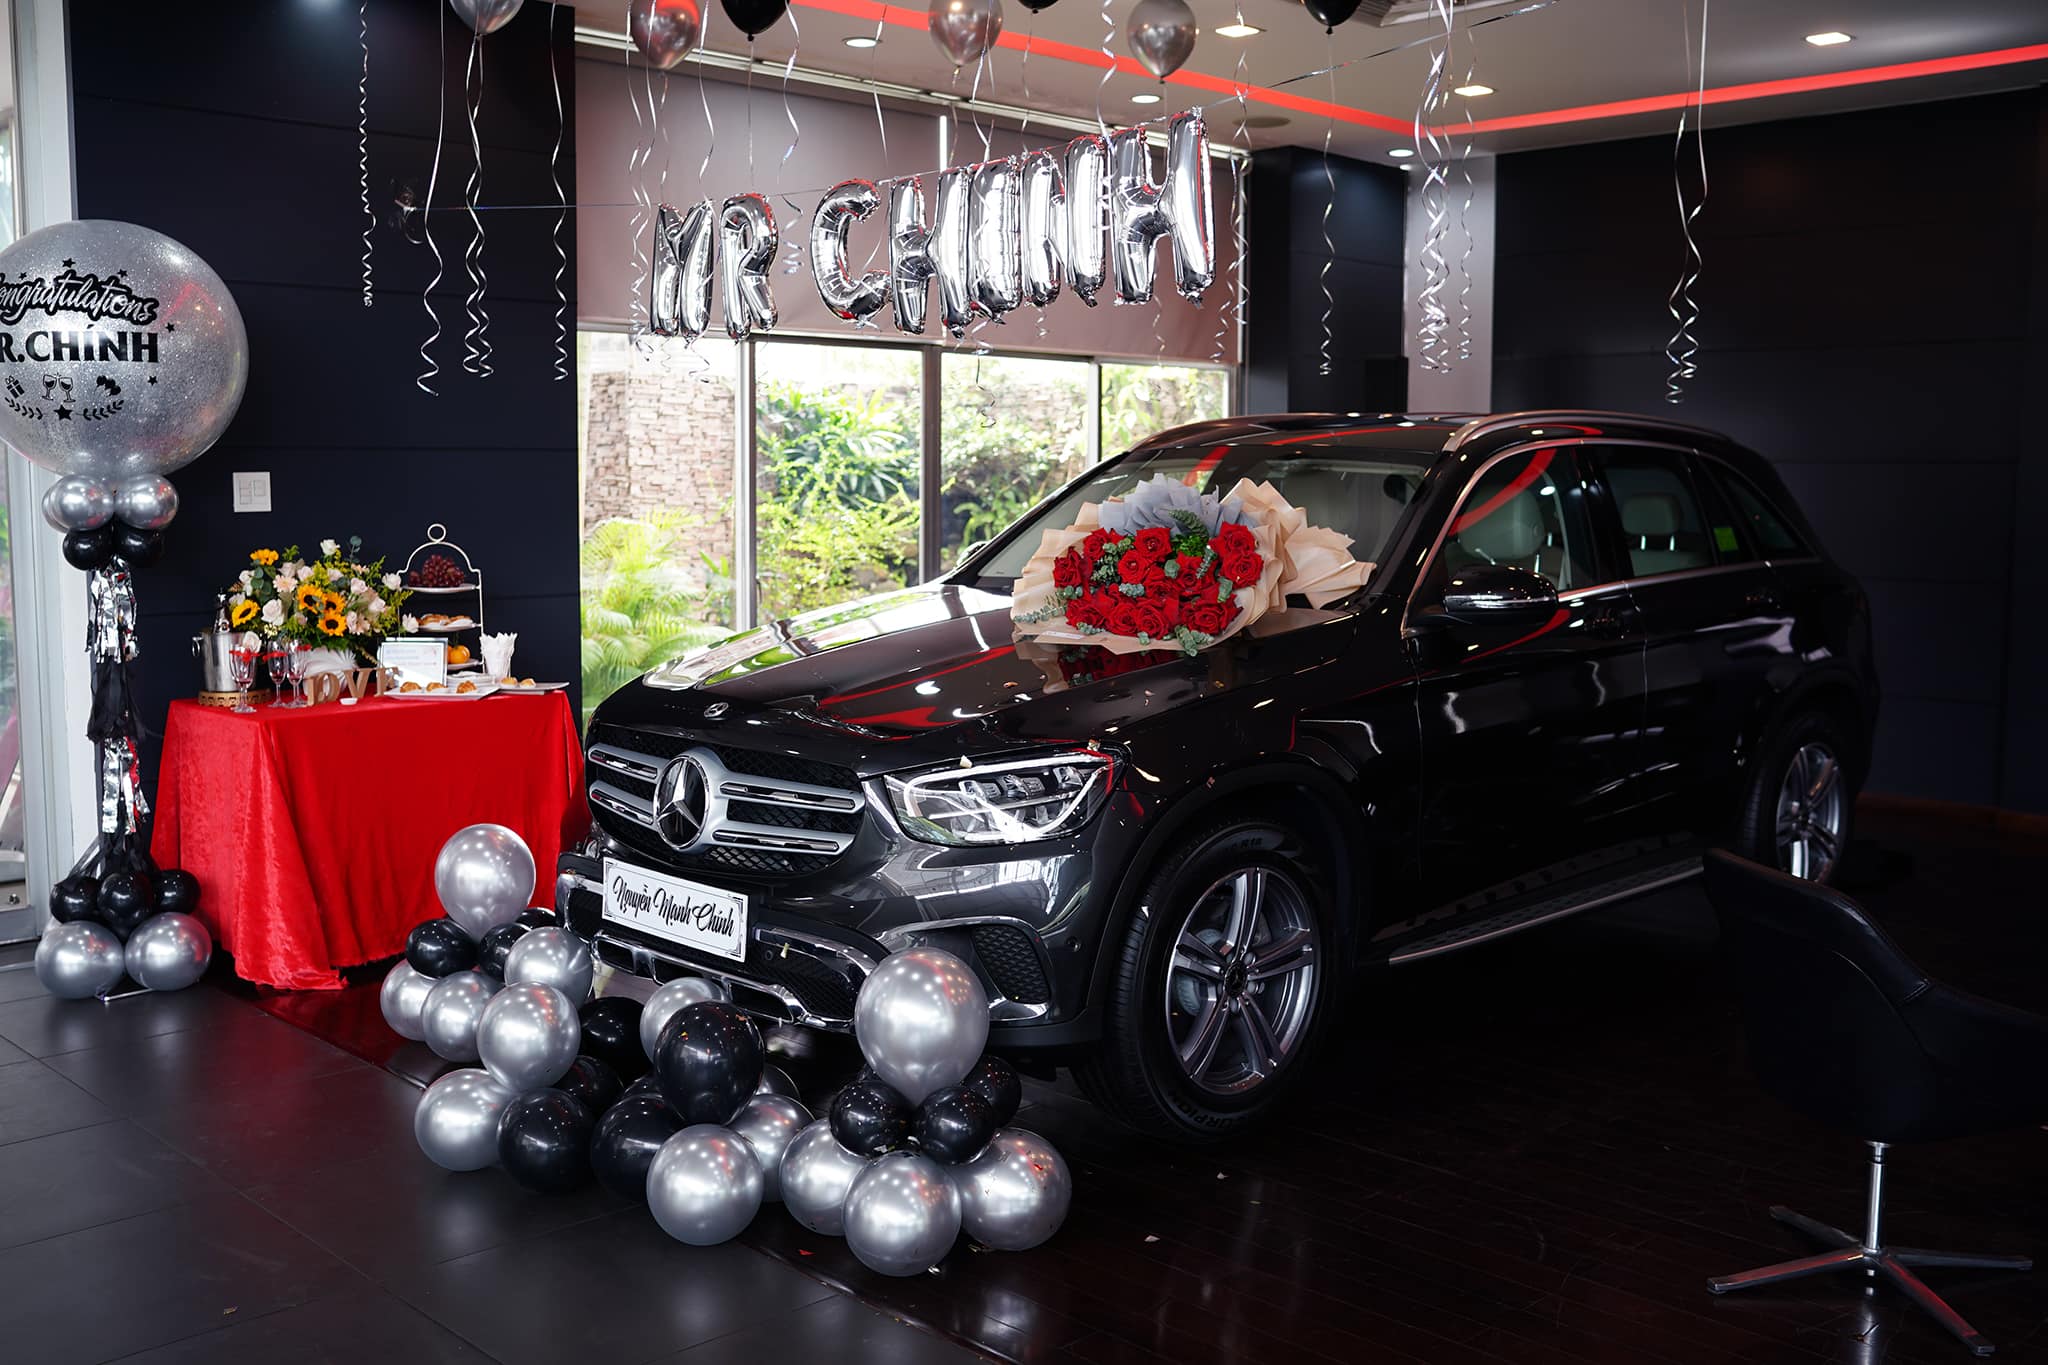 Câu chuyện hot rần rần MXH: Hỗ trợ khách mua Mercedes, 5 năm sau nhân viên sale được khách cảm ơn luôn bằng 1 chiếc Mẹc 2 tỷ - Ảnh 3.